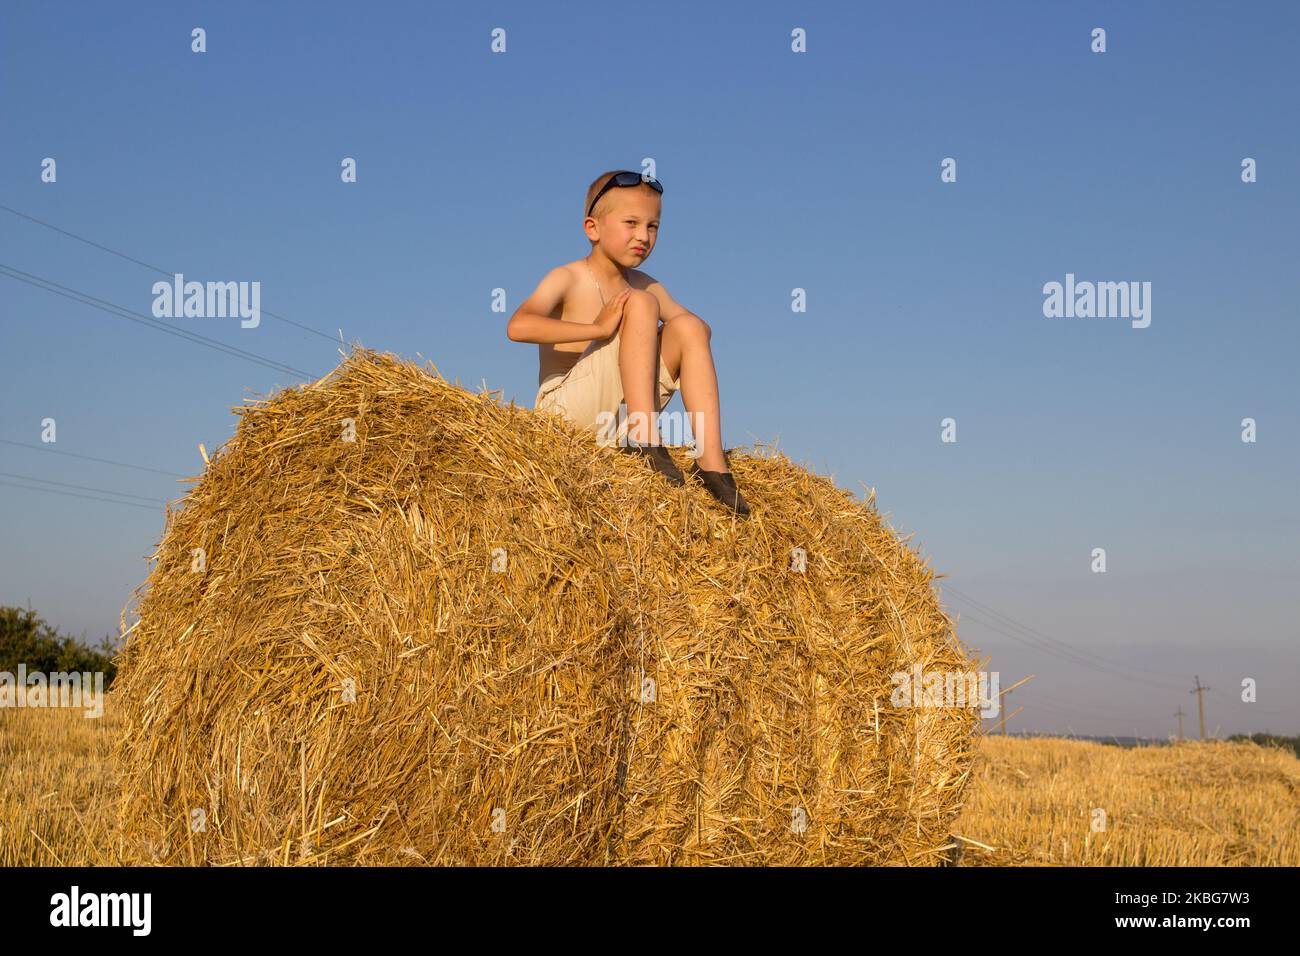 Heuhaufen sitzender Junge, kleine nette Jungen Shorts und modern sitzt auf einem Heuhaufen an einem Sommertag. Ernte. Stockfoto